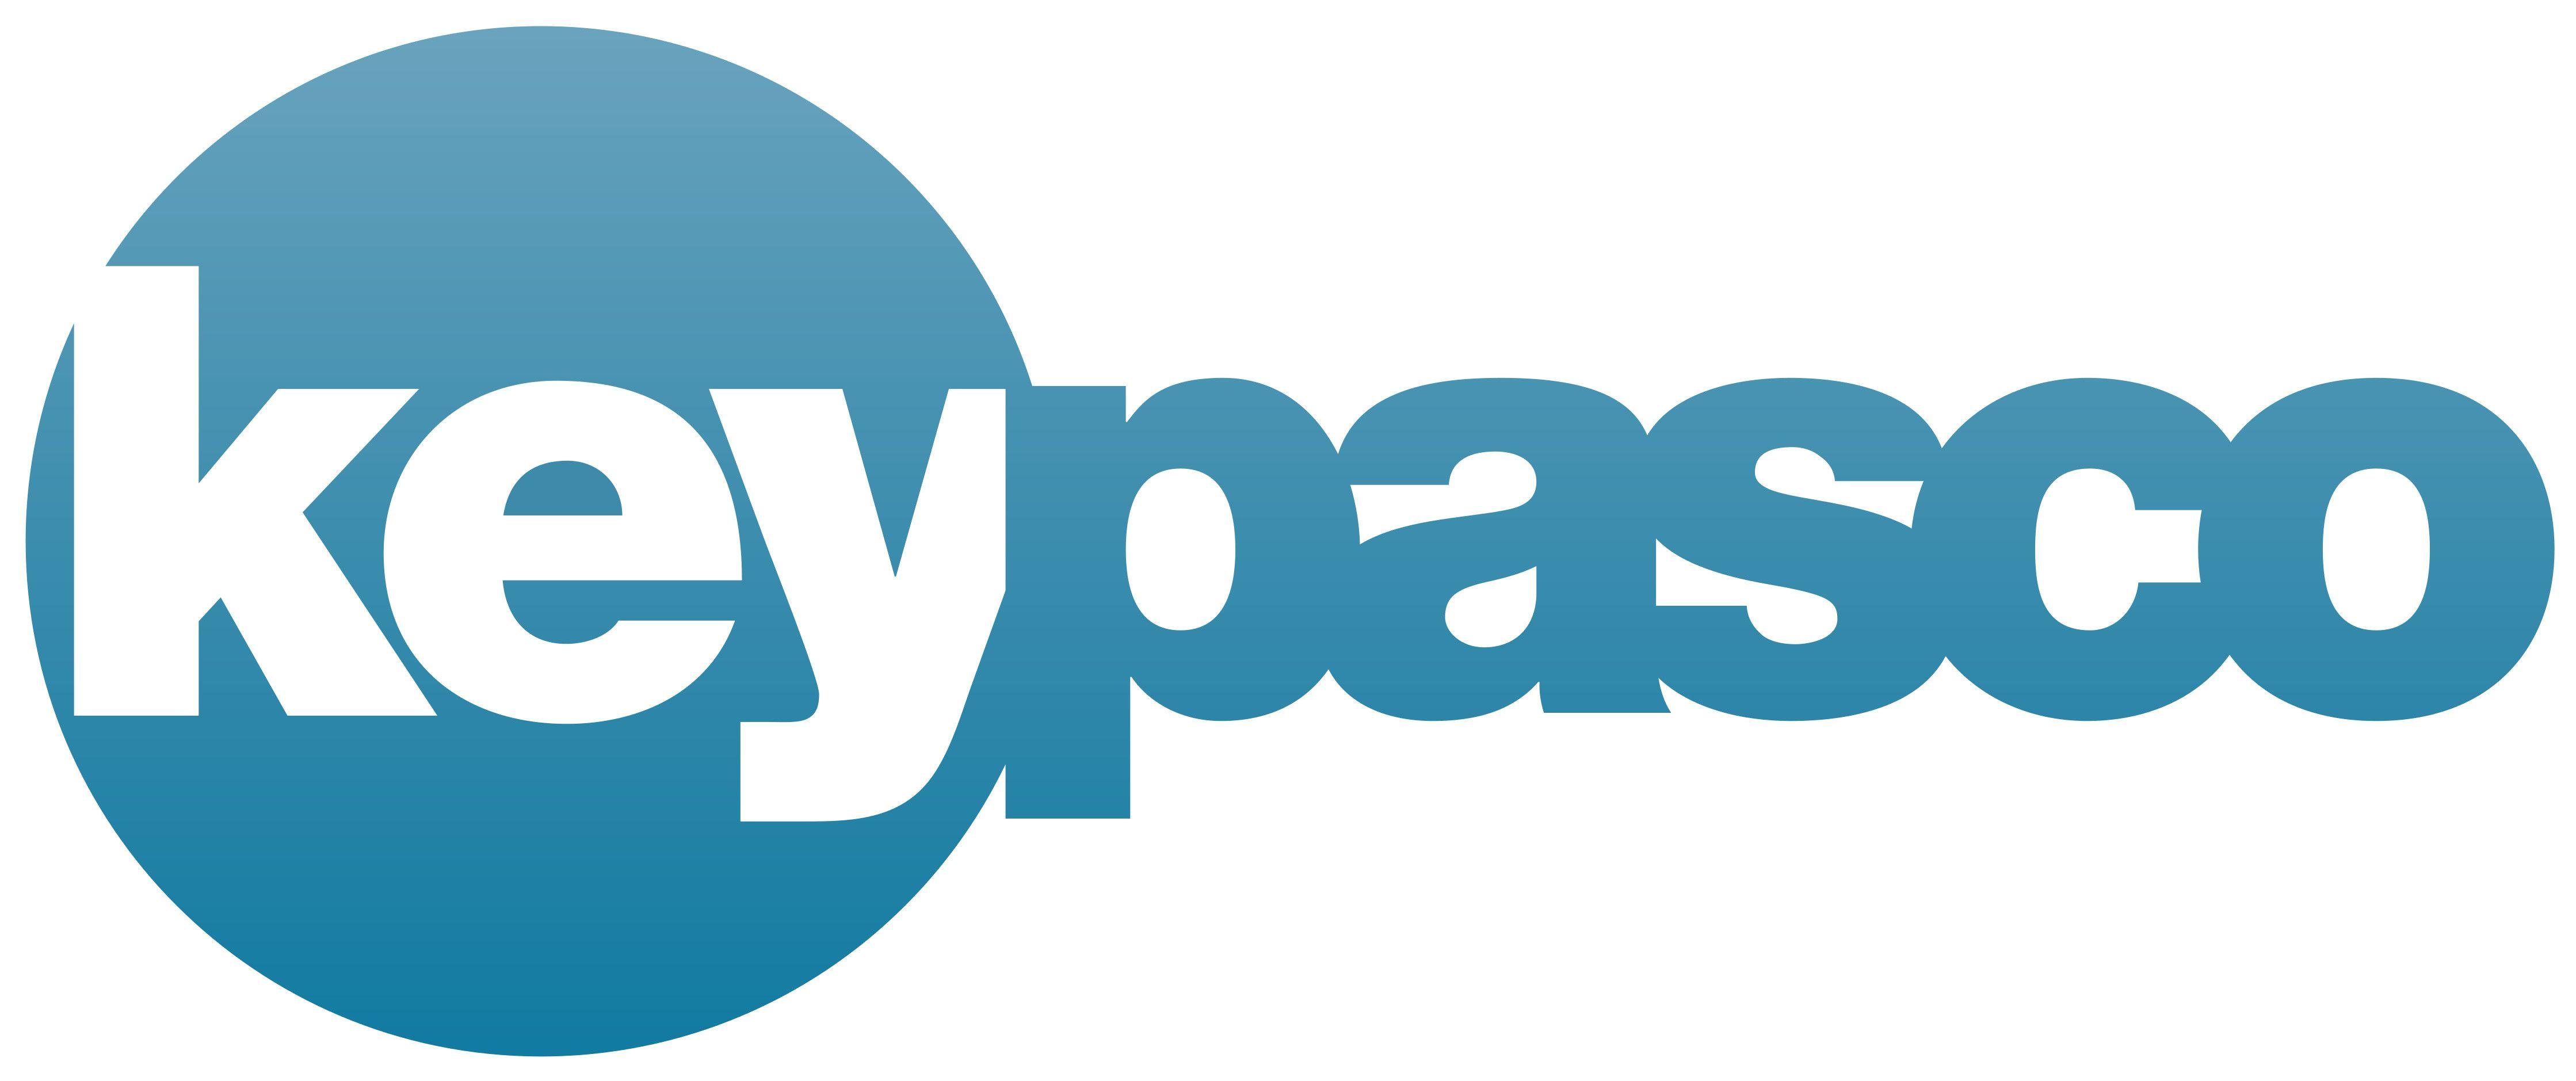 End User Server Logo - Keypasco logo | Keypasco